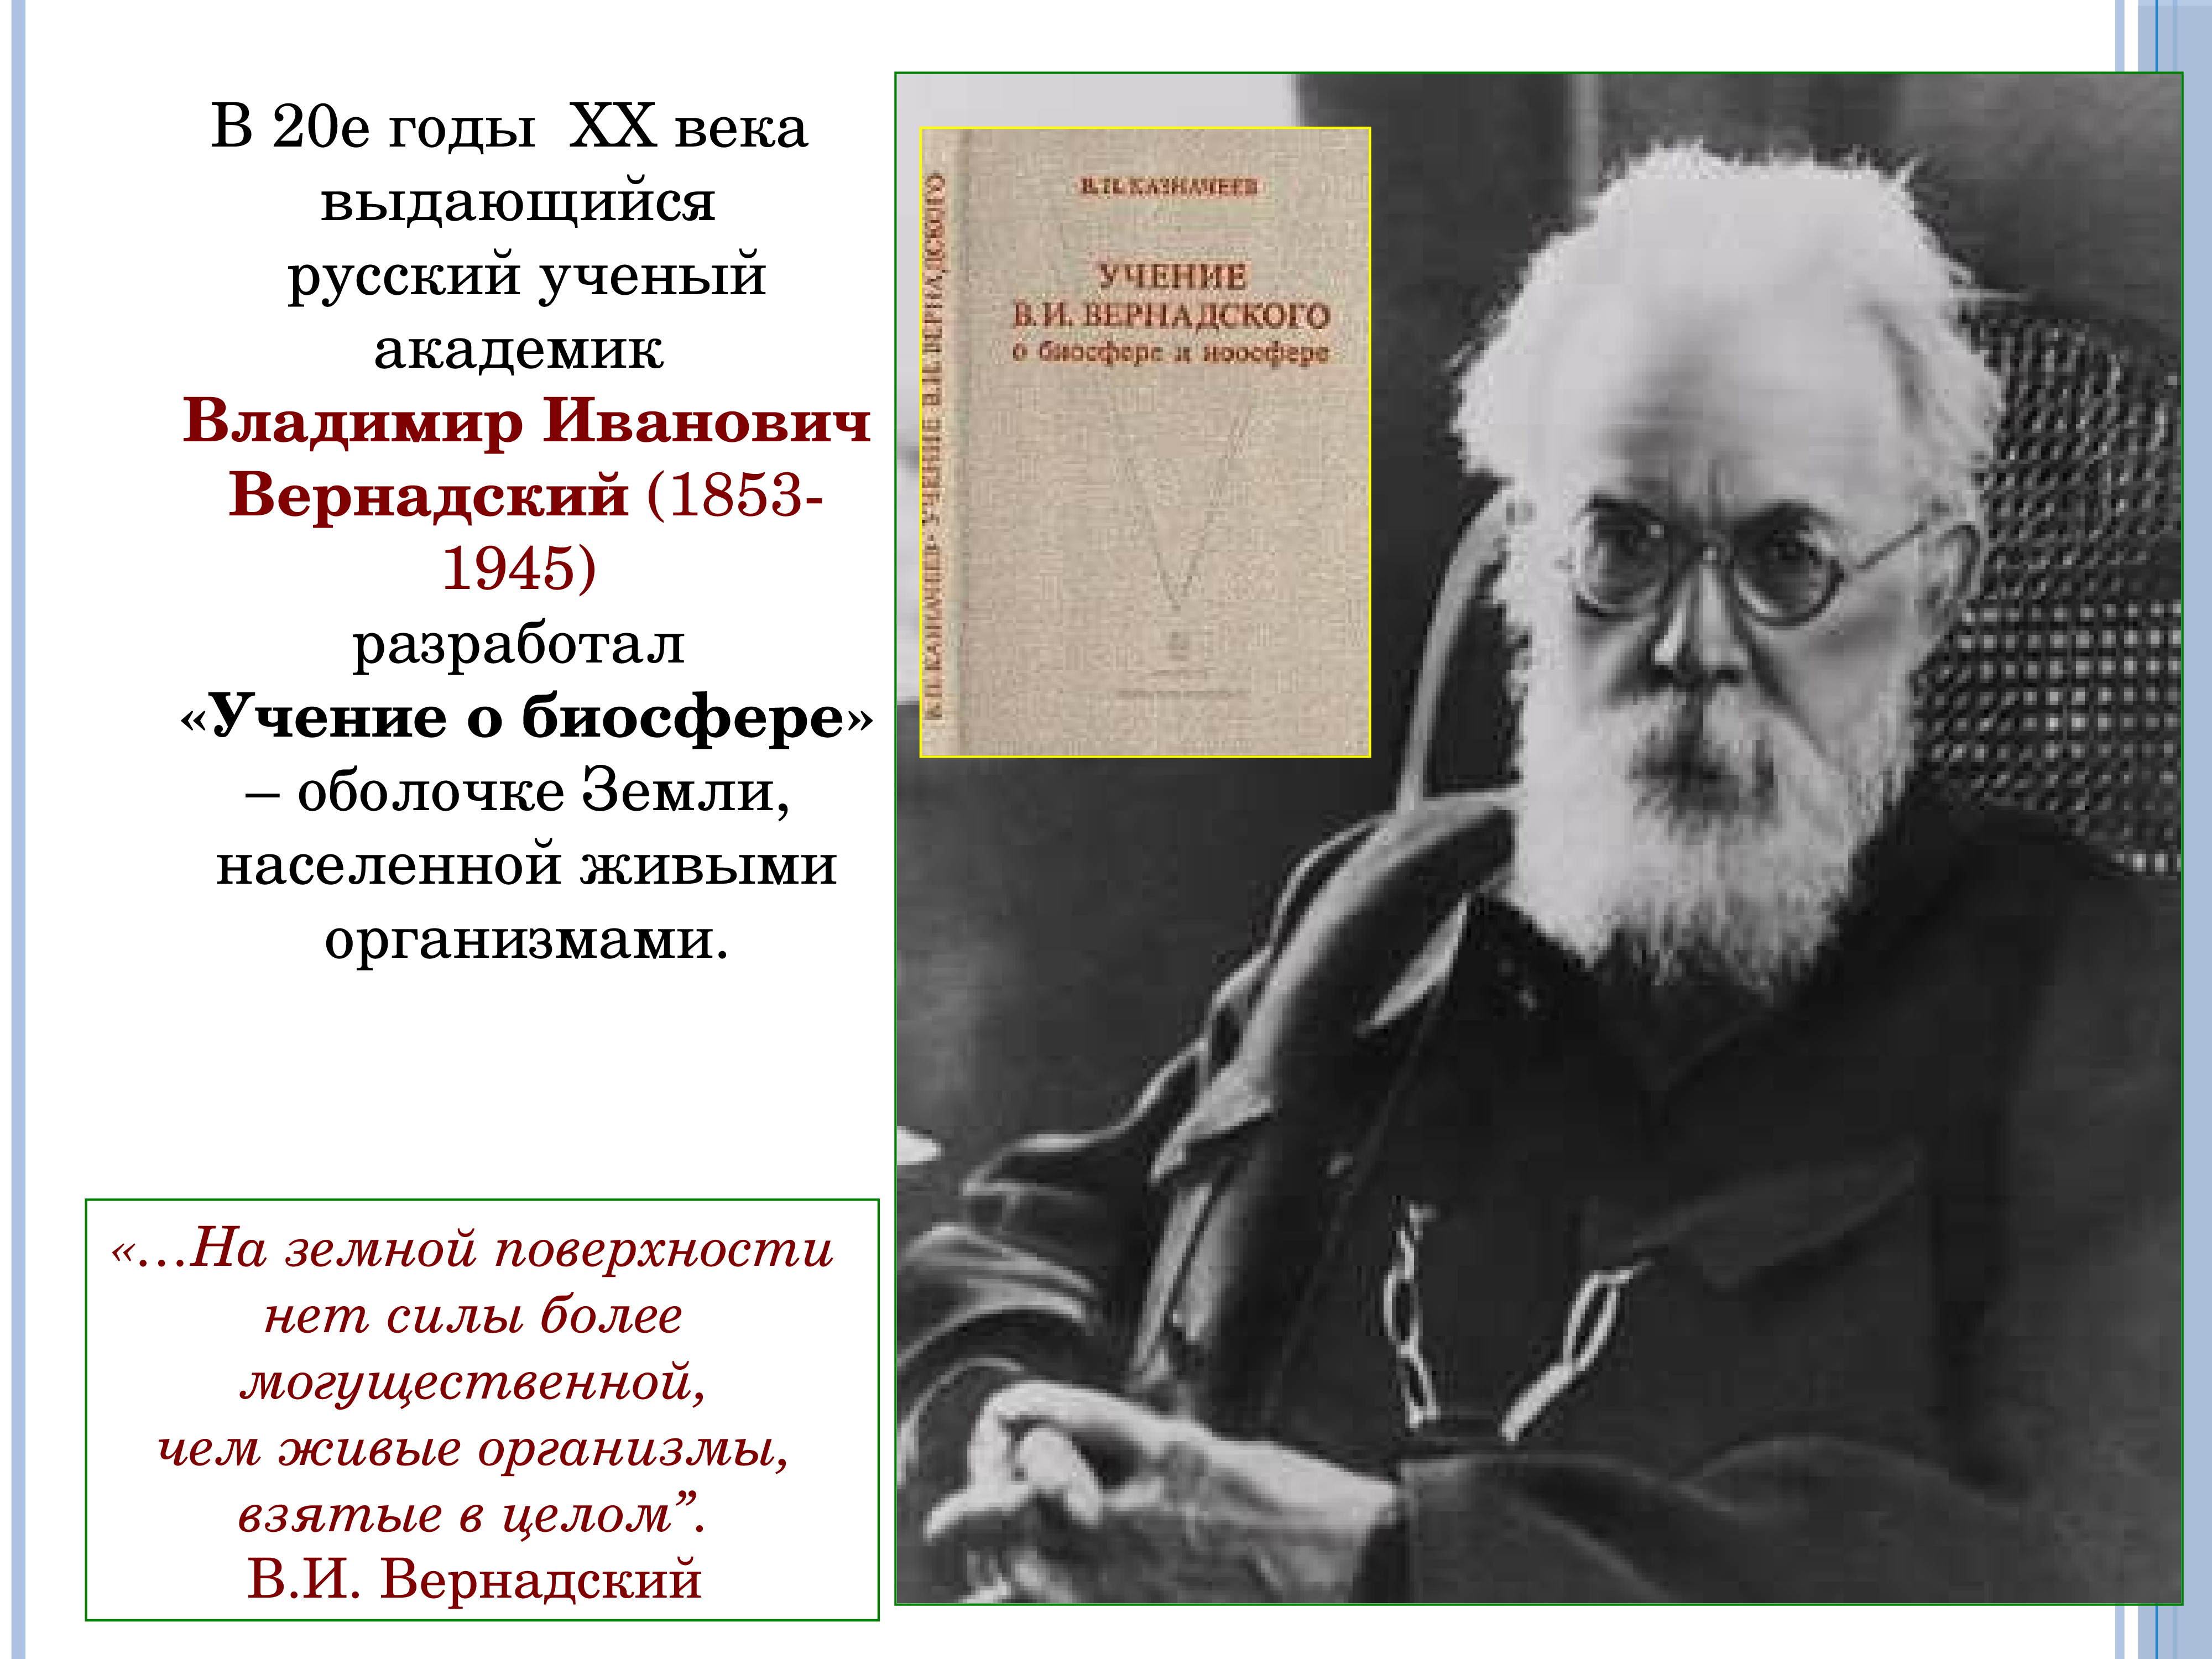 Высказывания о биосфере верные. В И Вернадский 20 века. Русские ученые 20 века.